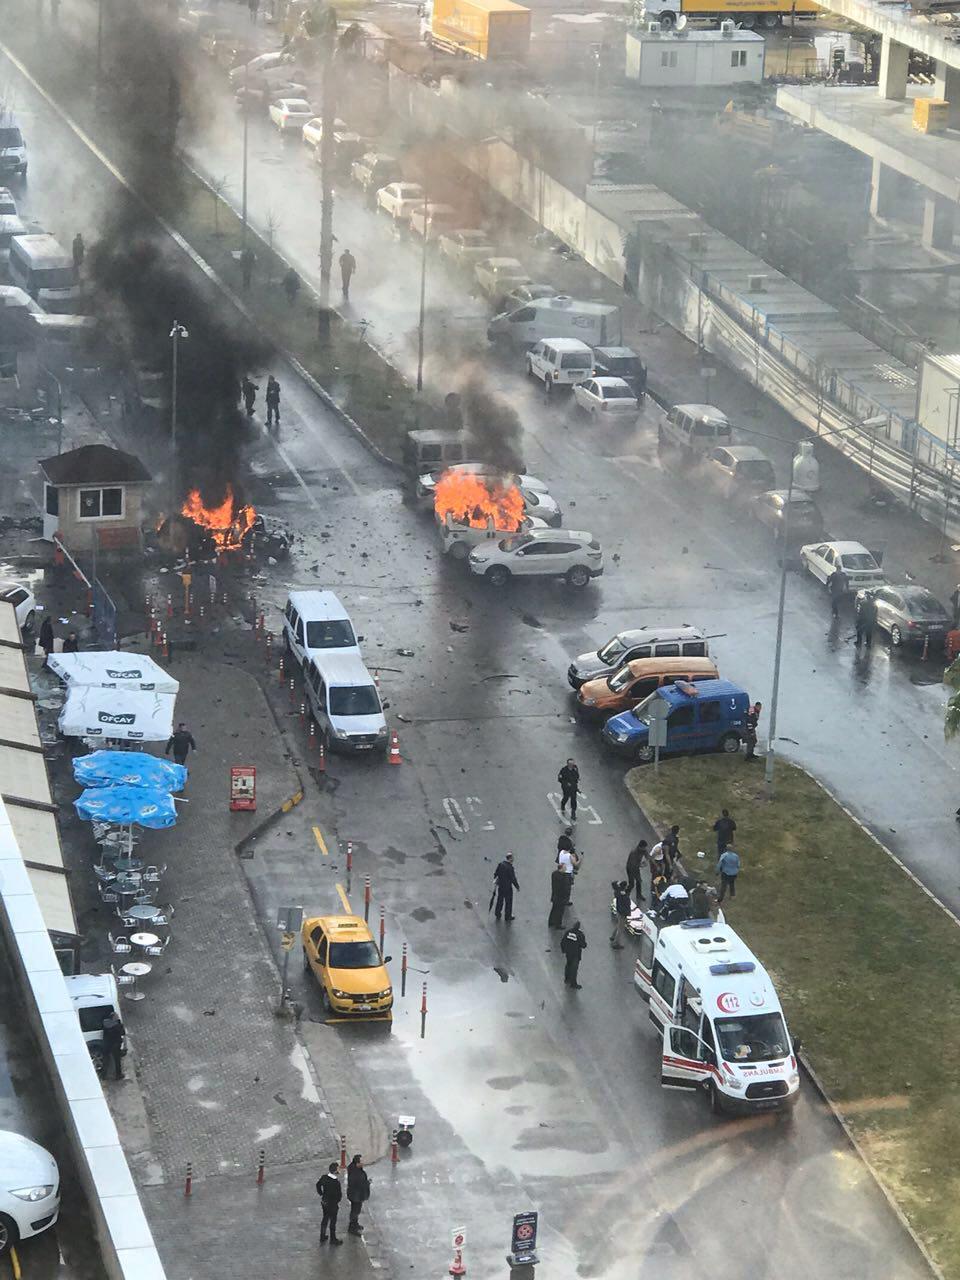 Video: İzmir Adliyesi'ne bombalı terör saldırısı düzenlendi. 2 polis memuru şehit oldu, 10 yaralı var. 2 terörist etkisiz hale getirildi.